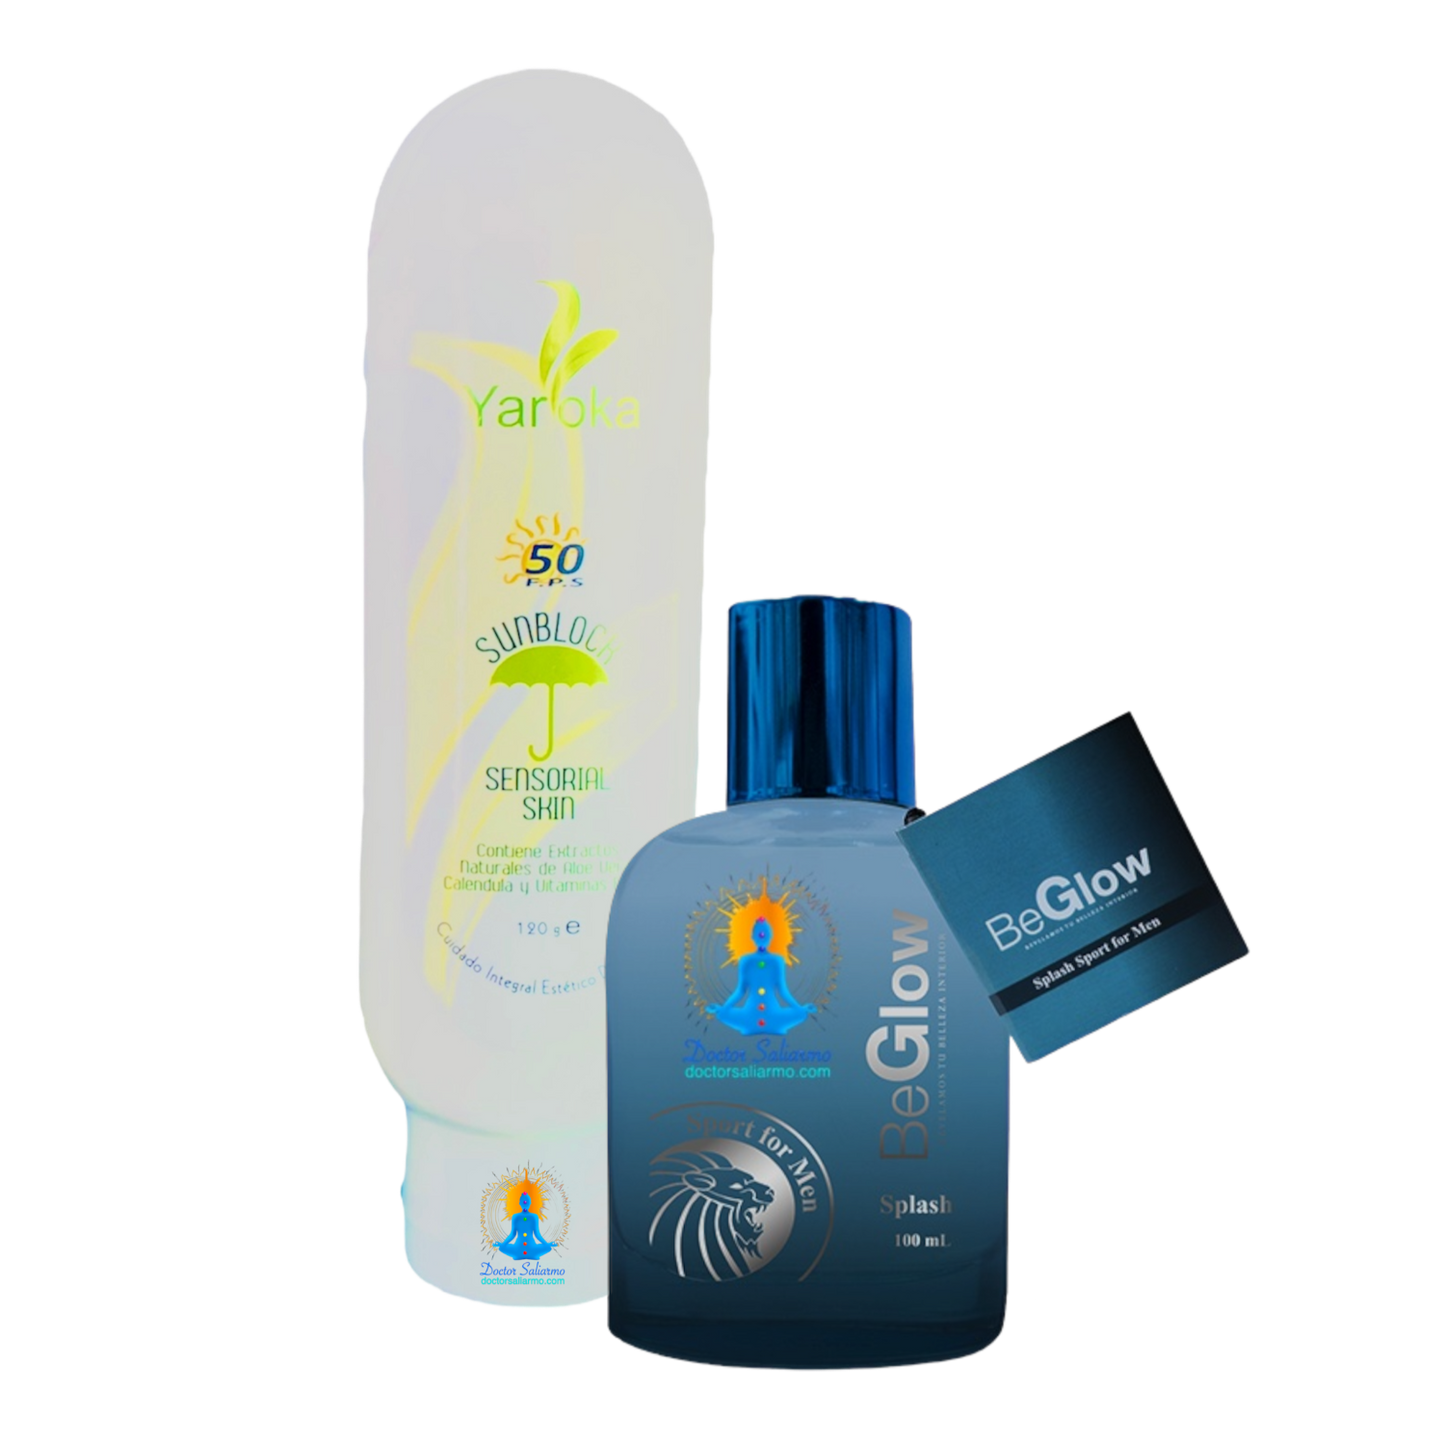 Kit para papa contiene Splash for men fragancia para perfumar y humectar y protector solar sunblock sensorial skin Yaroka.